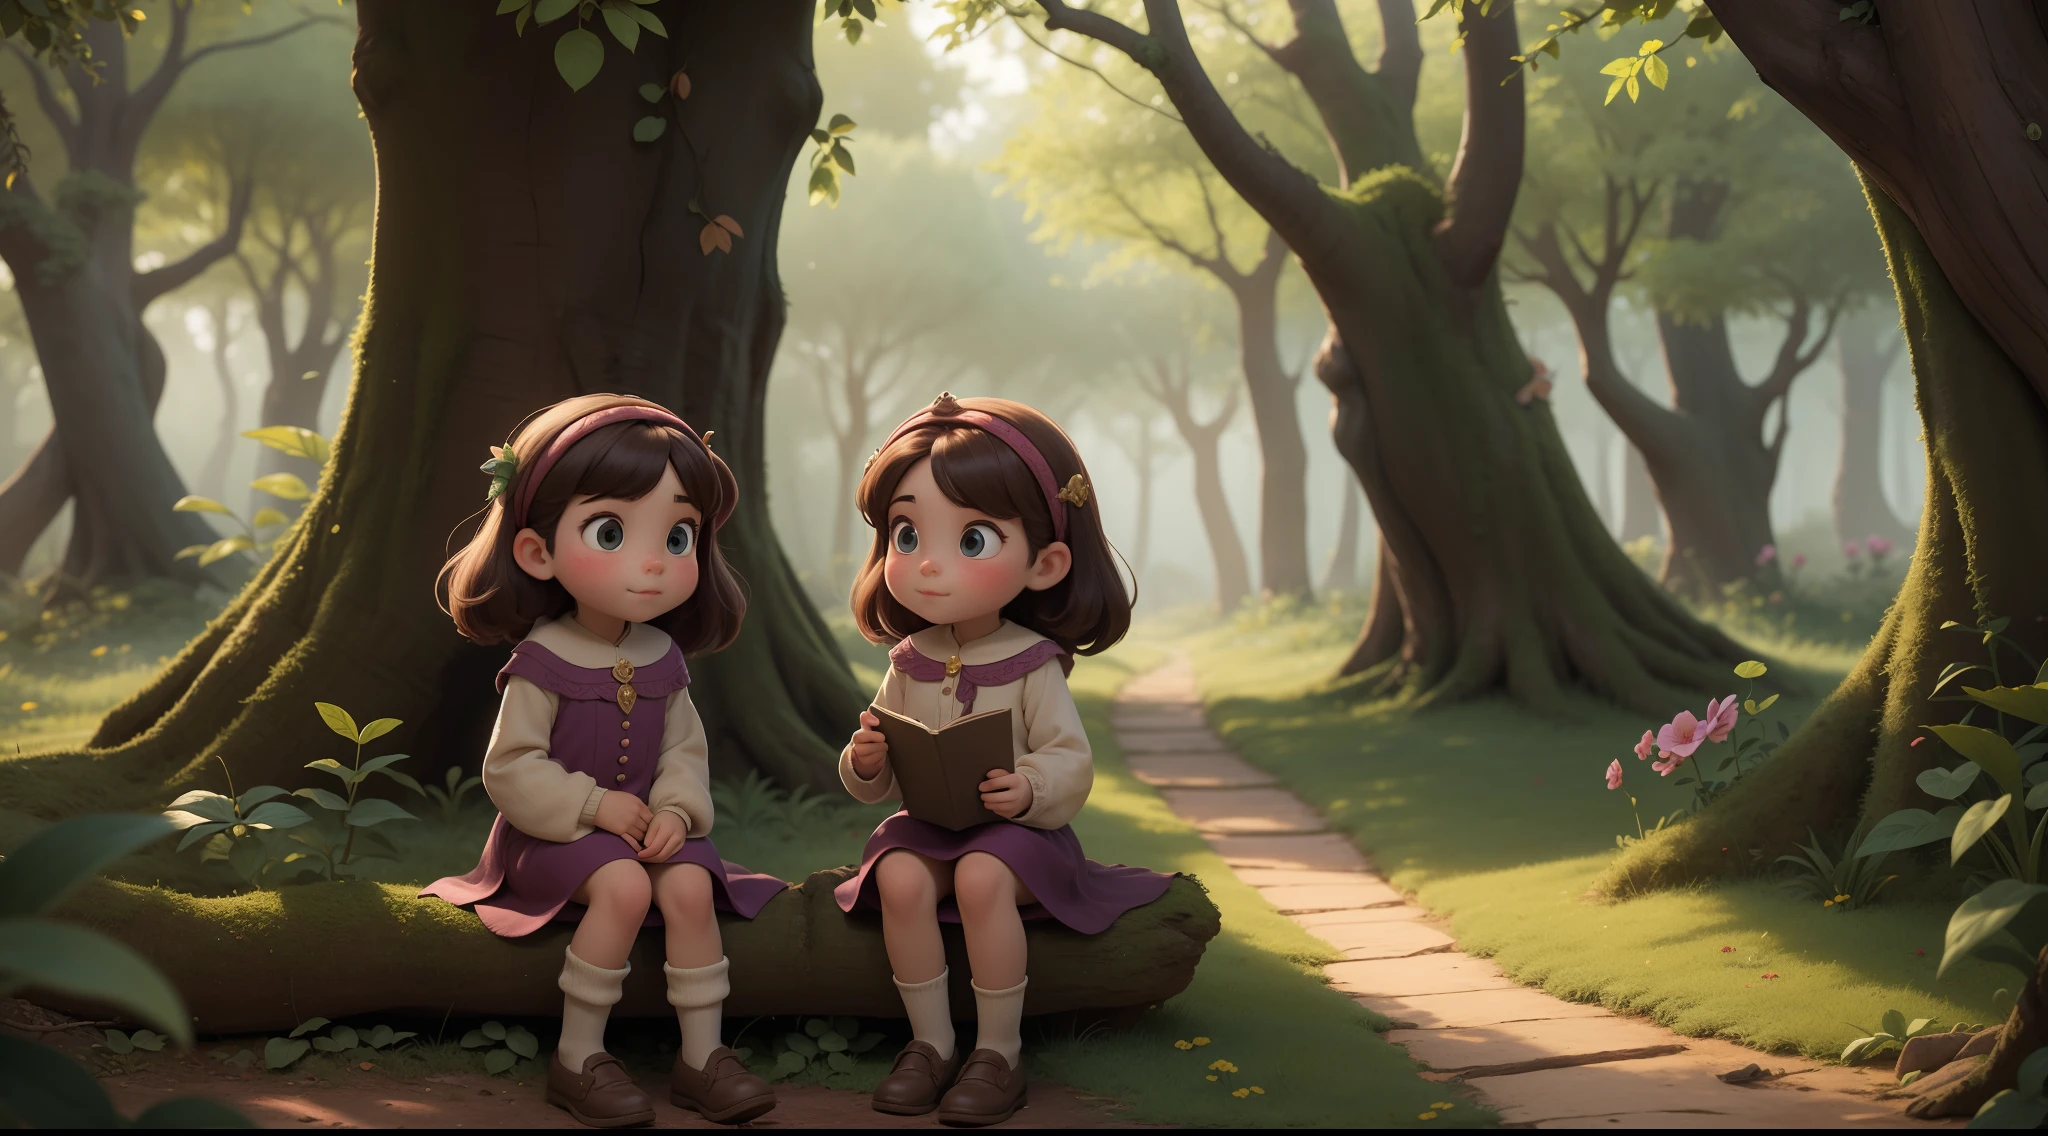 曾幾何時, 在魔法森林邊緣的一個舒適的村莊裡, 那裡住著一對雙胞胎姊妹，名叫拉拉和伊西. 他們形影不離，喜歡探索家外森林的神奇秘密.